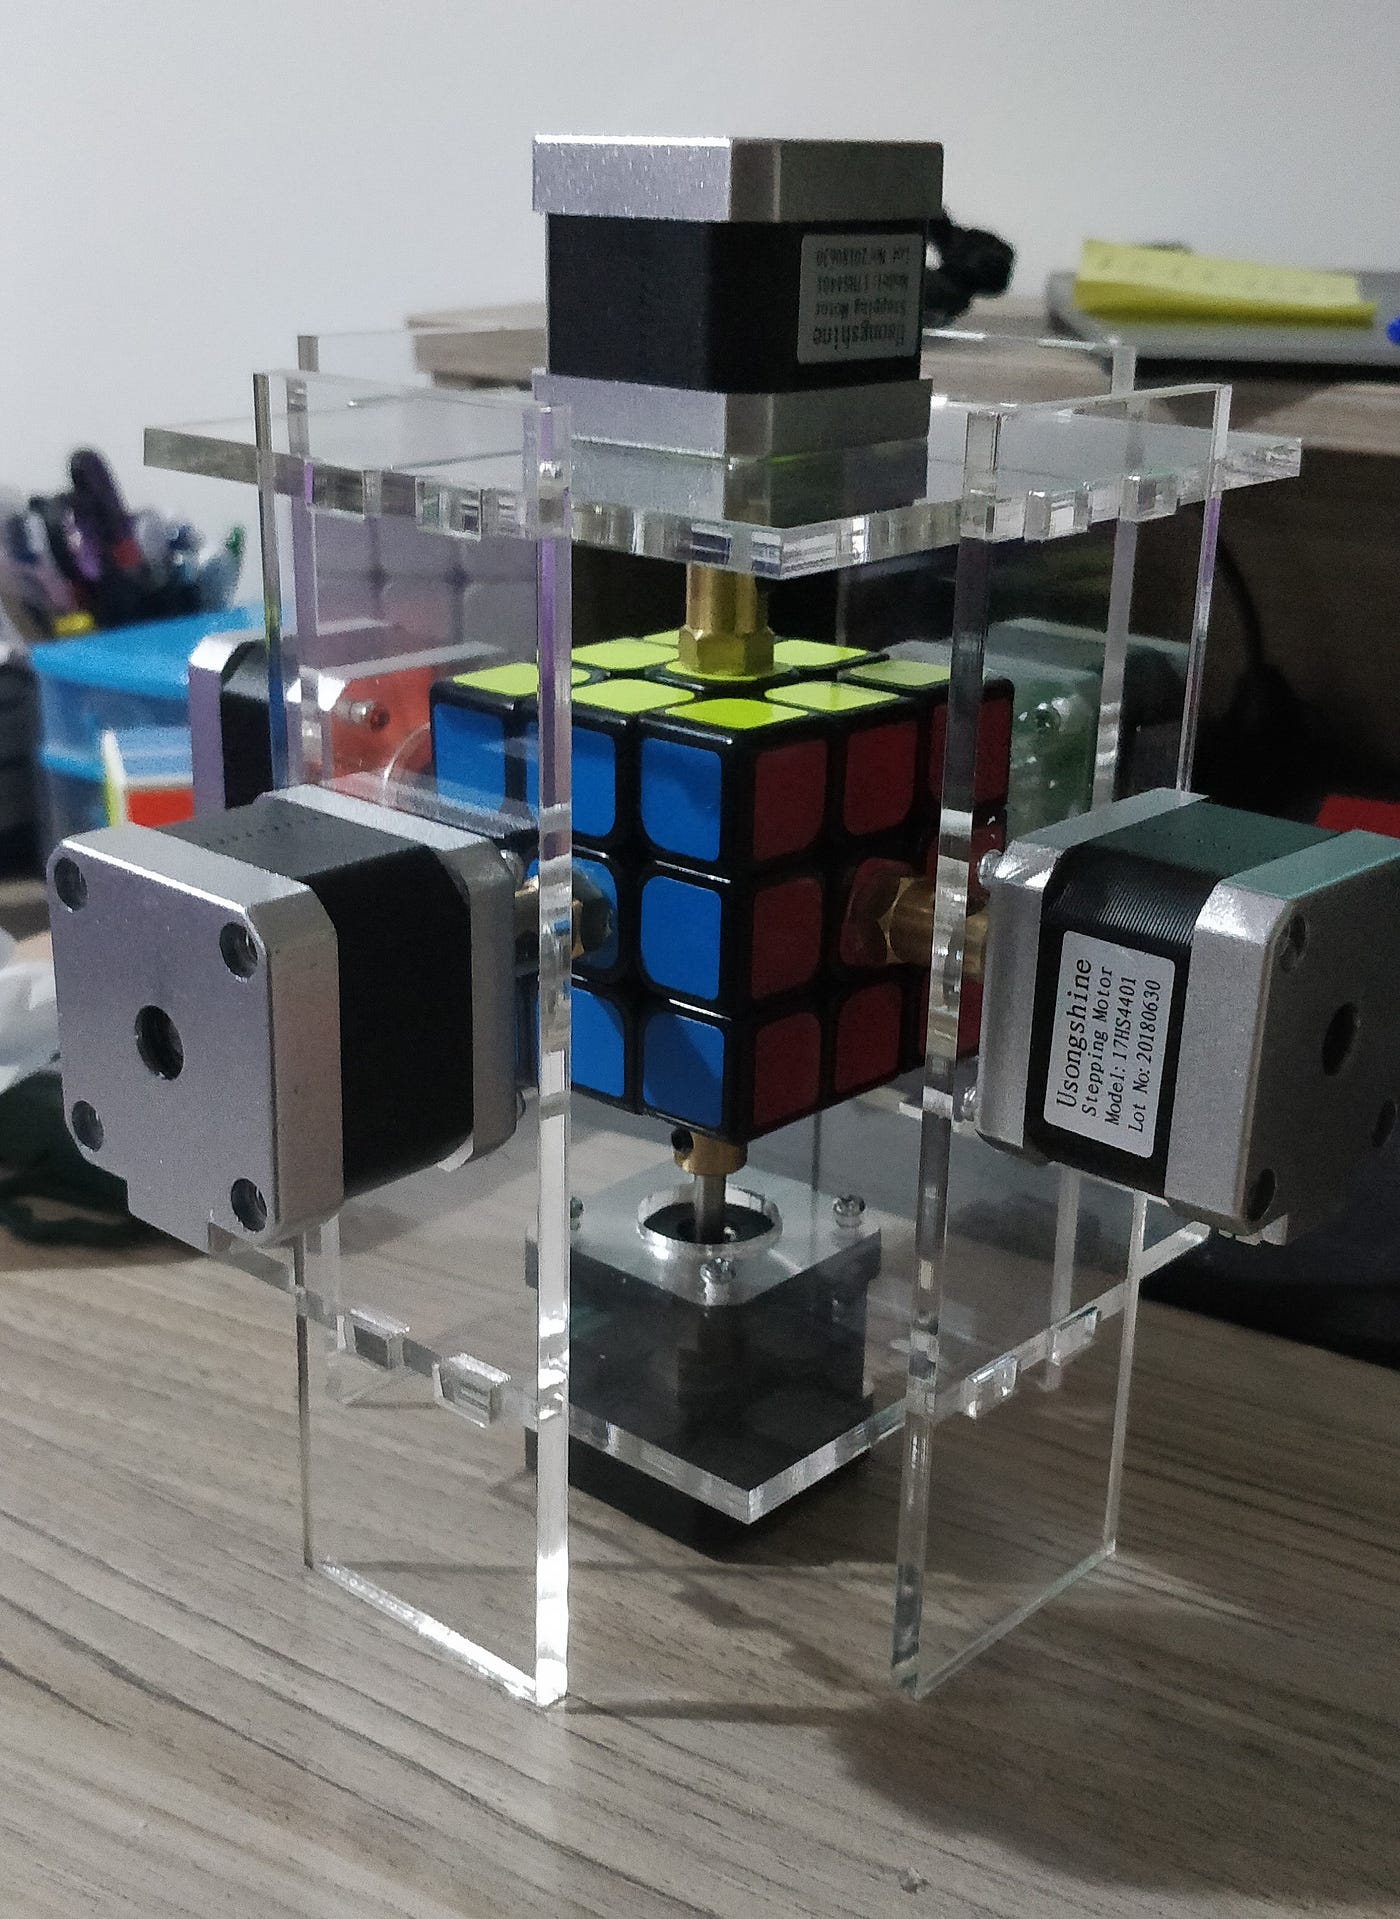 Puzzle Cube of Plexiglas